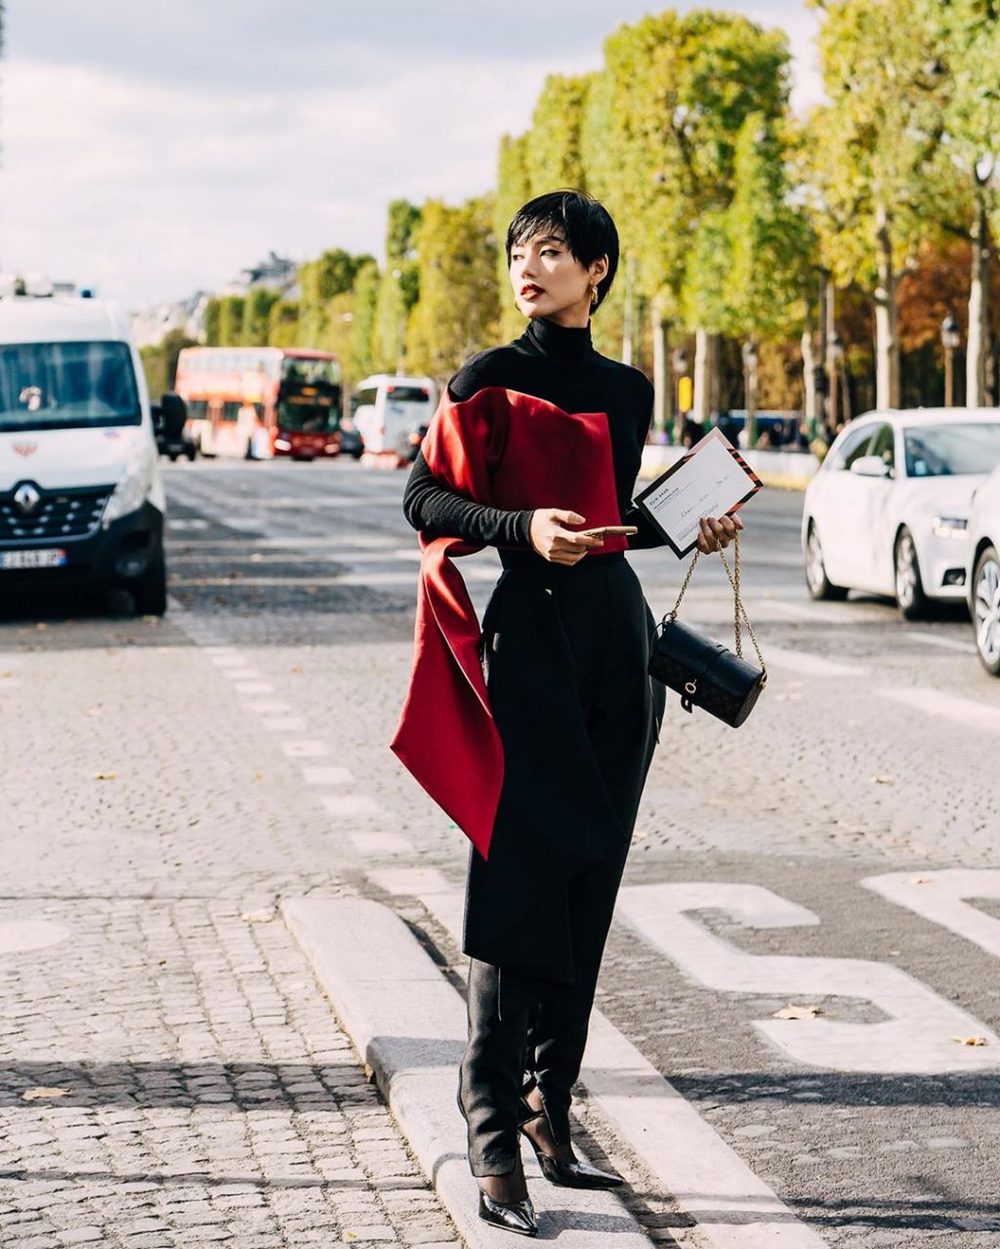  
"Cô em trendy" Khánh Linh cũng tạo dấu ấn khi tham dự Tuần lễ thời trang Paris Xuân - Hè 2020.  (Ảnh: IG)